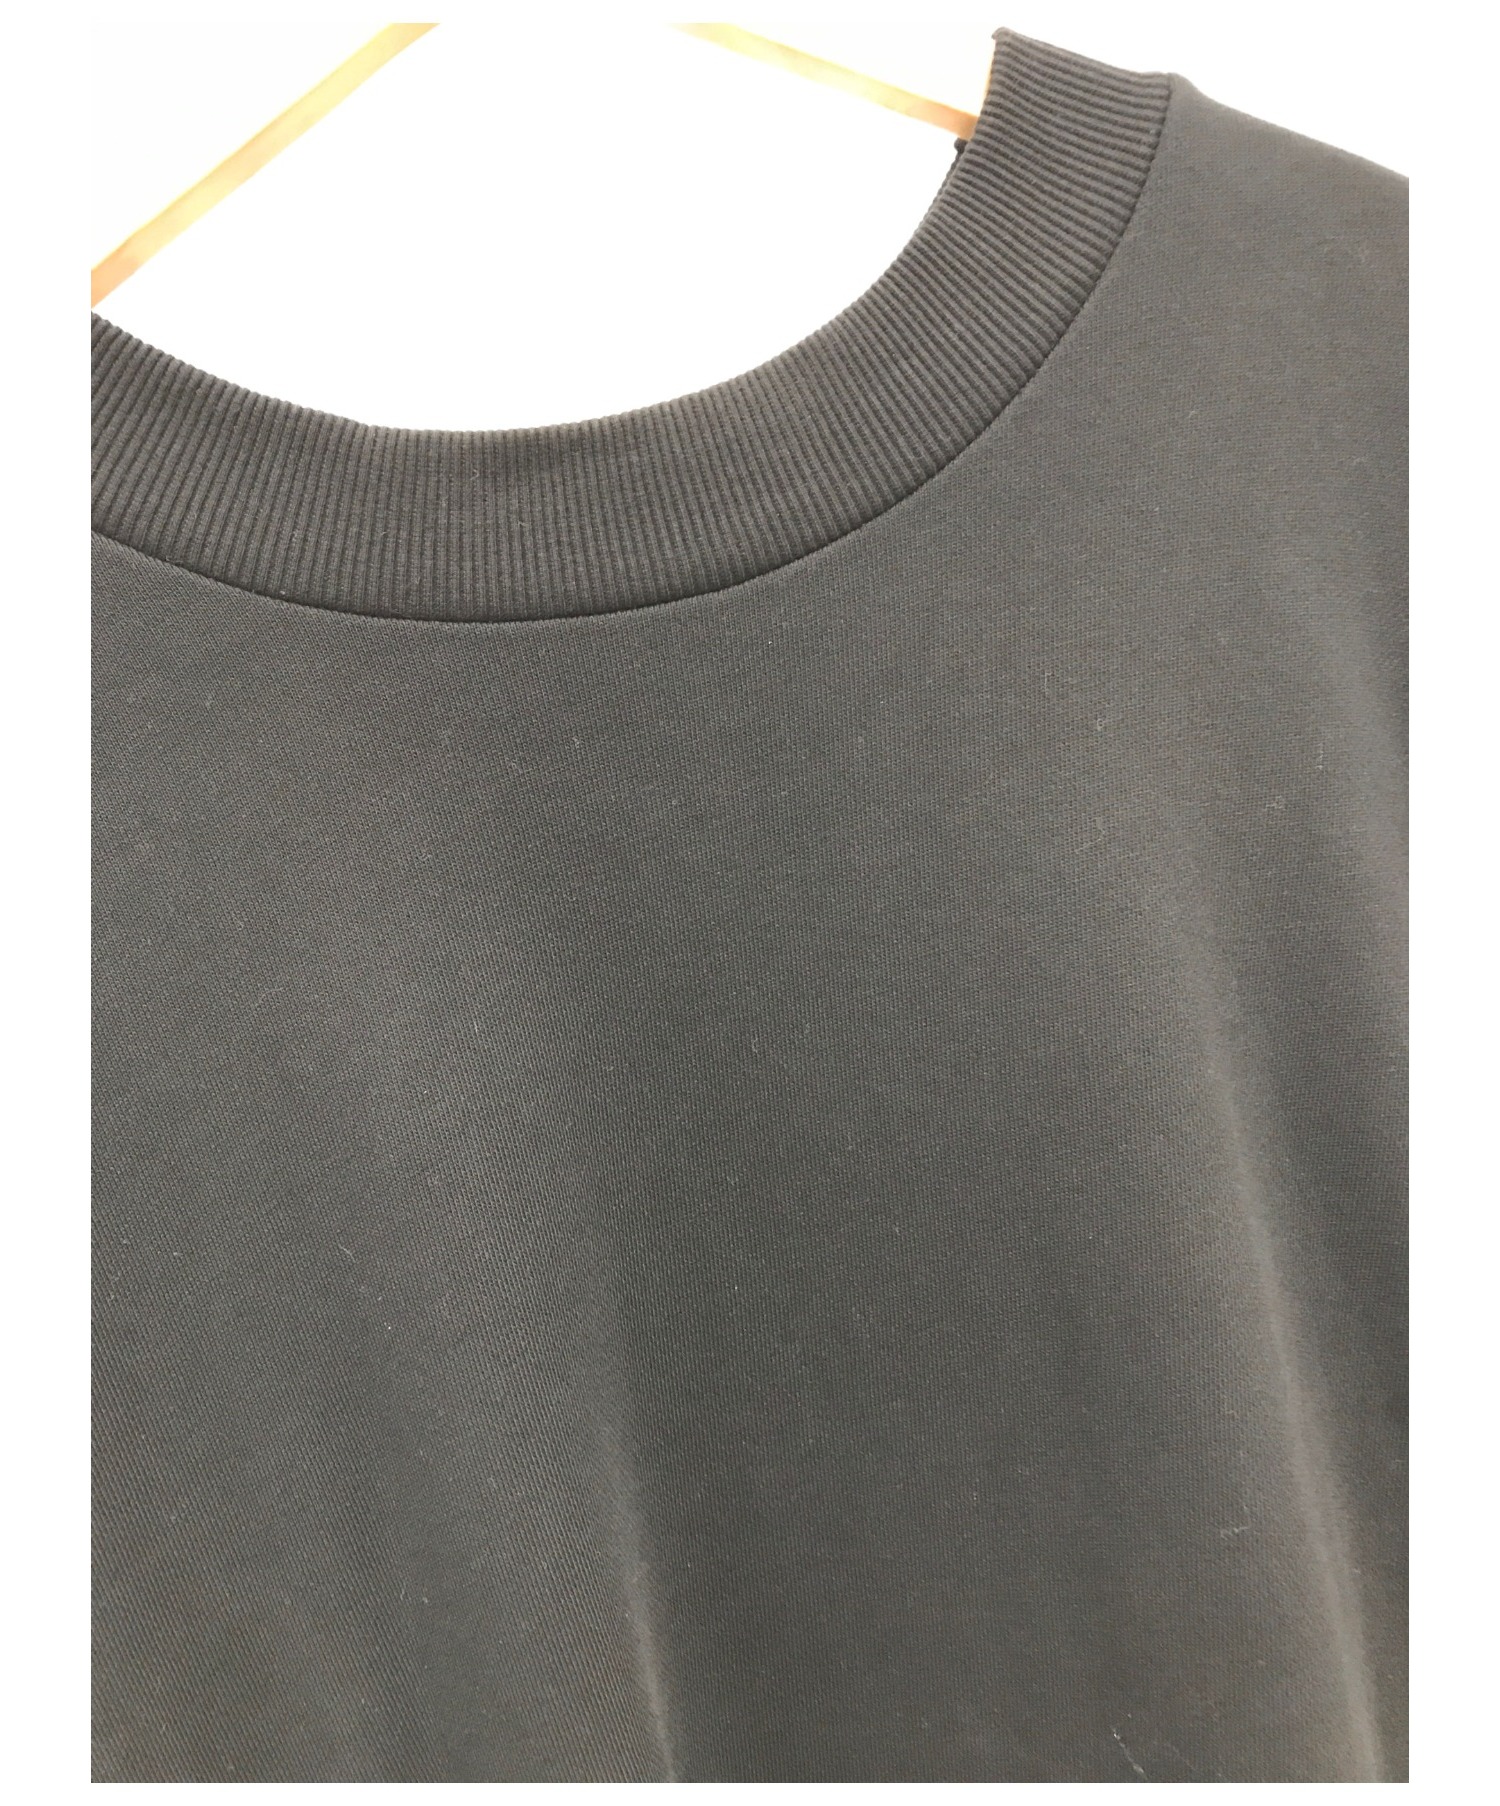 ANTON LISIN (アントンリシン) デザイナープリントスウェットシャツ ブラック サイズ:M SWEATSHIRT DESIGNER PRINT